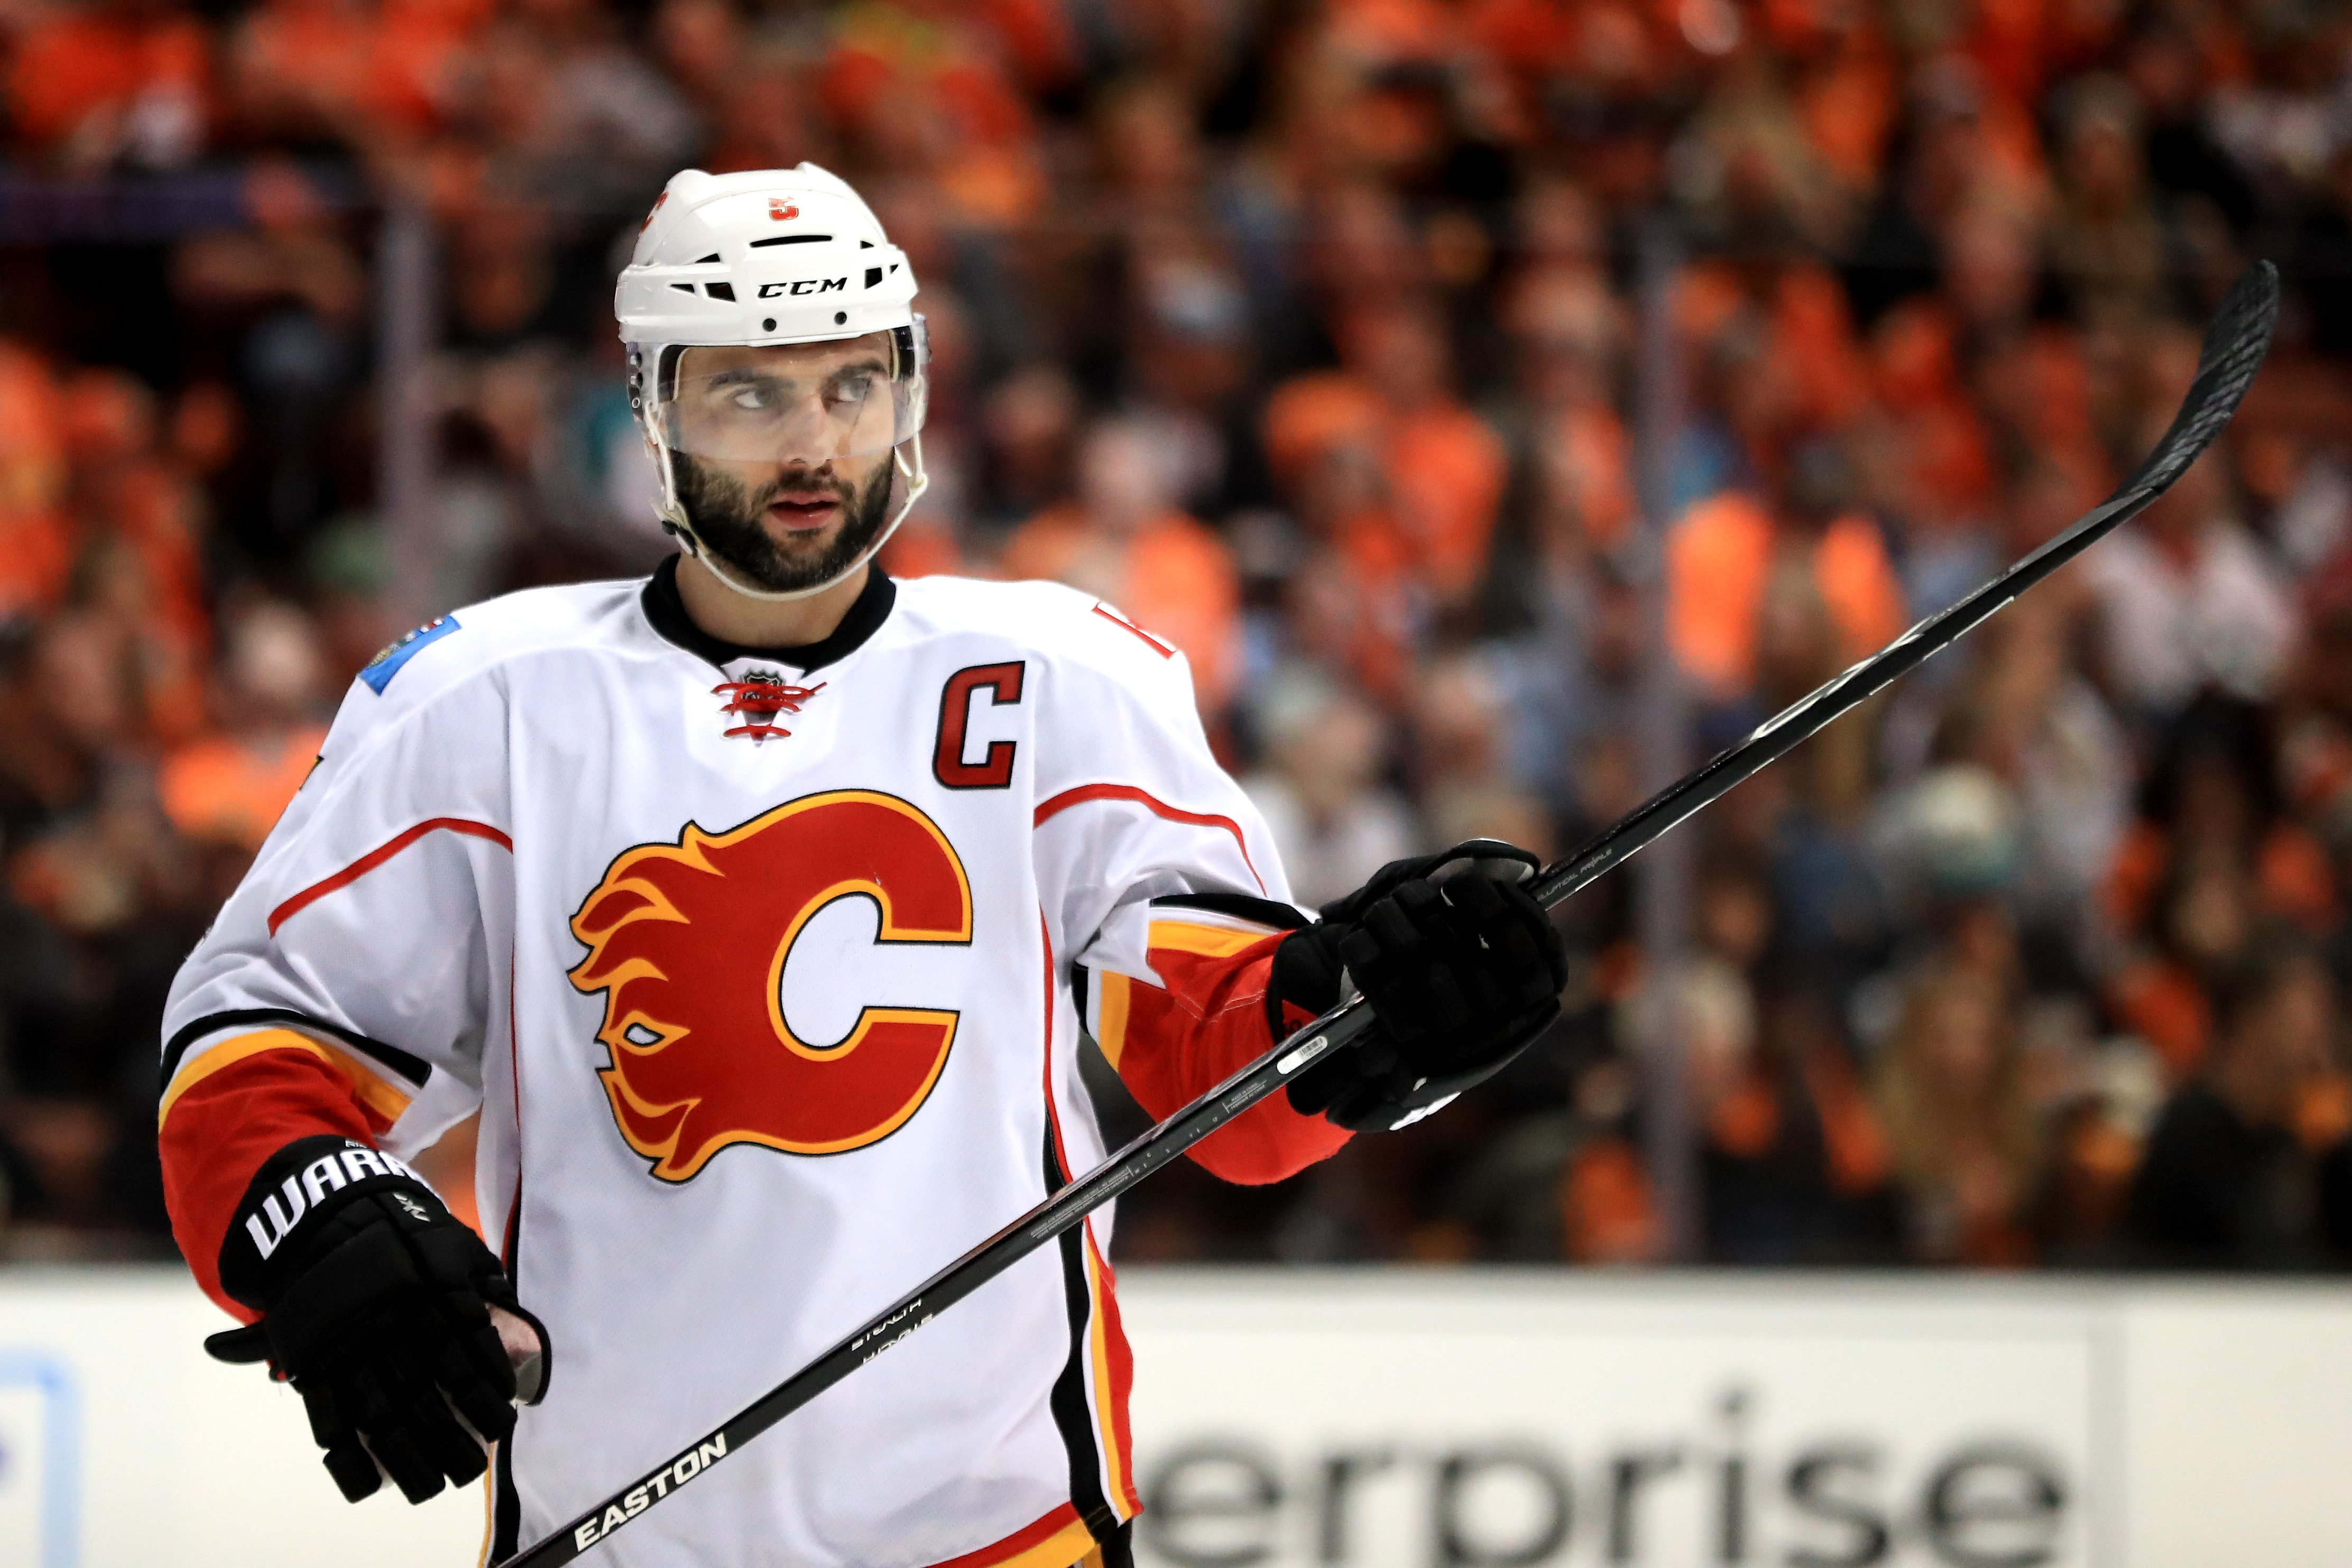 Ducks vs. Calgary: Flames captain Giordano's availability is key